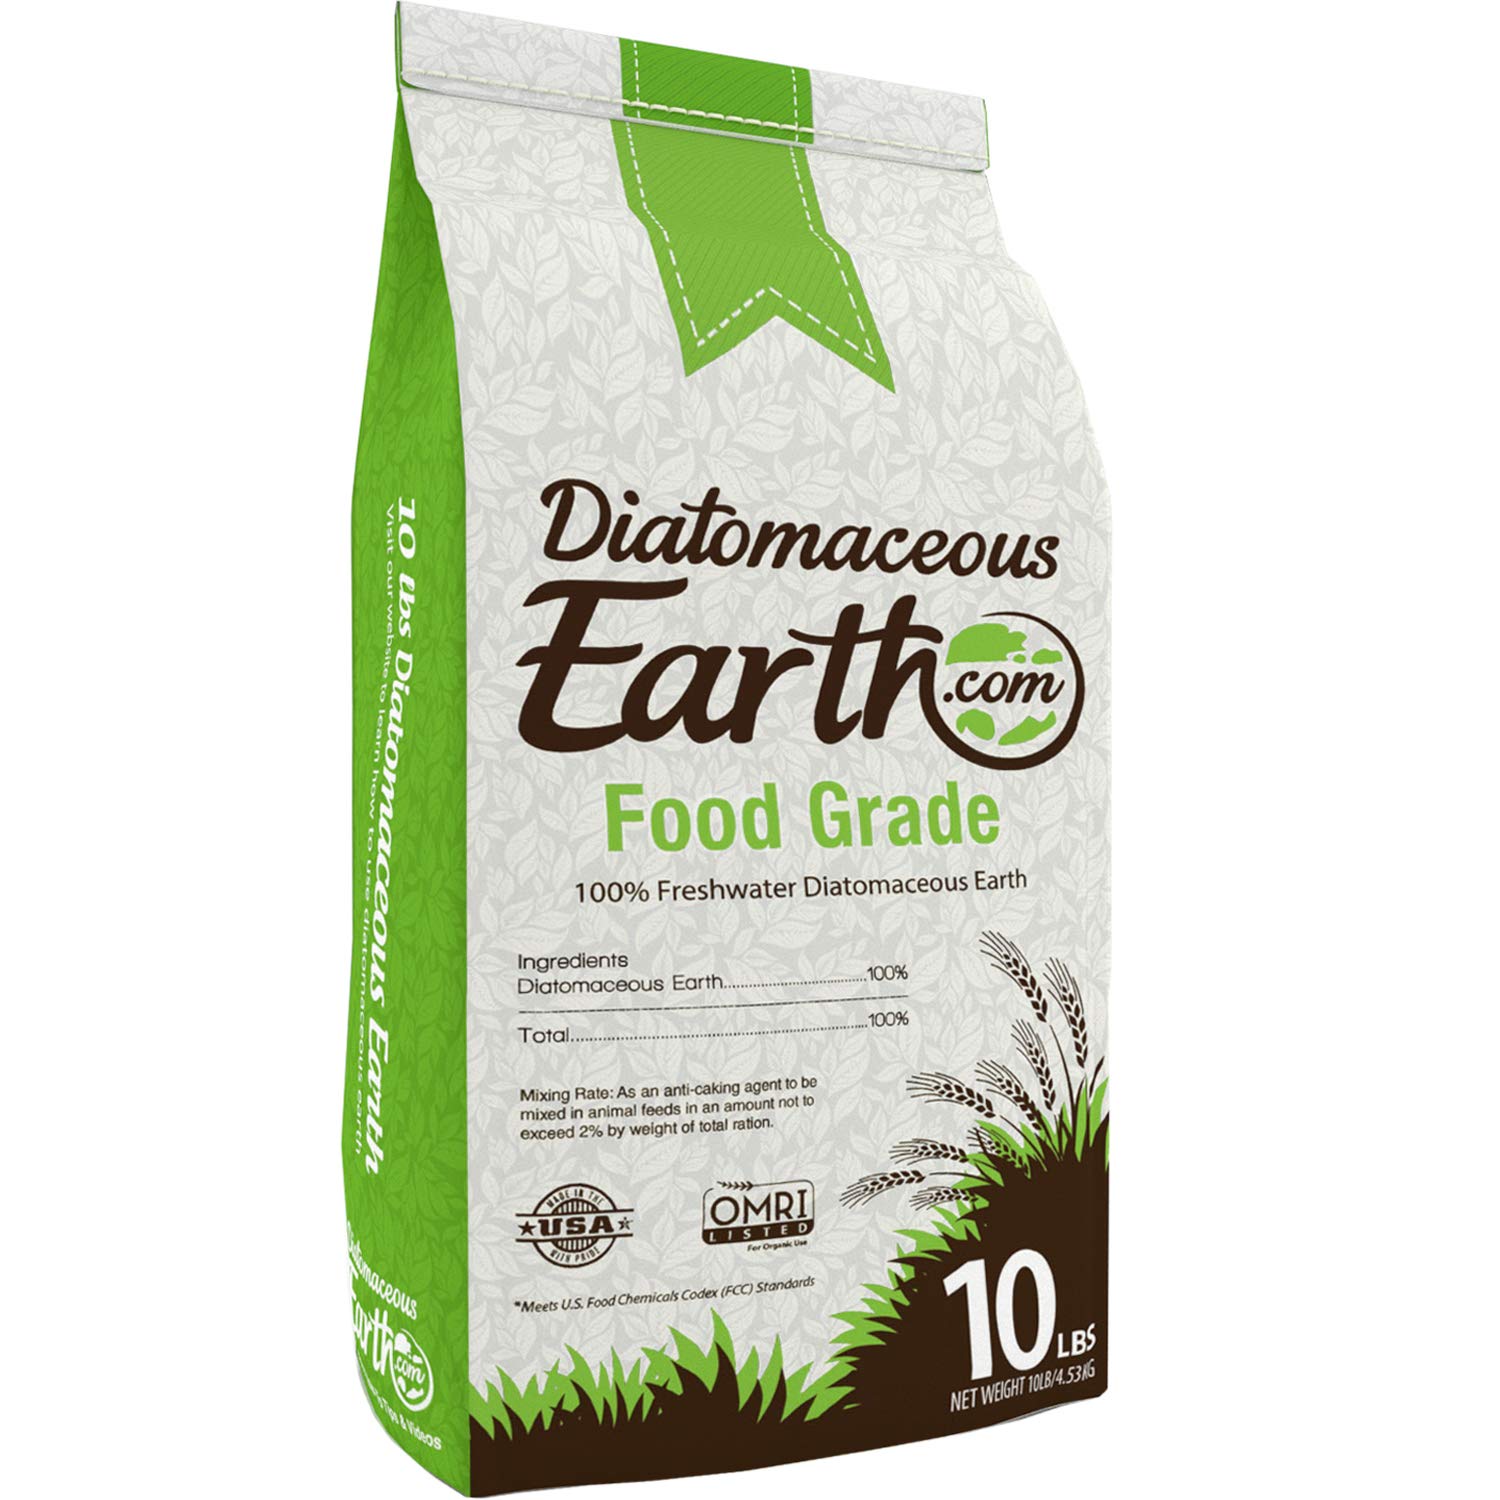 DiatomaceousEarth DE10 FGDE10 Food Grade diatomaceous Earth, 10 Lb